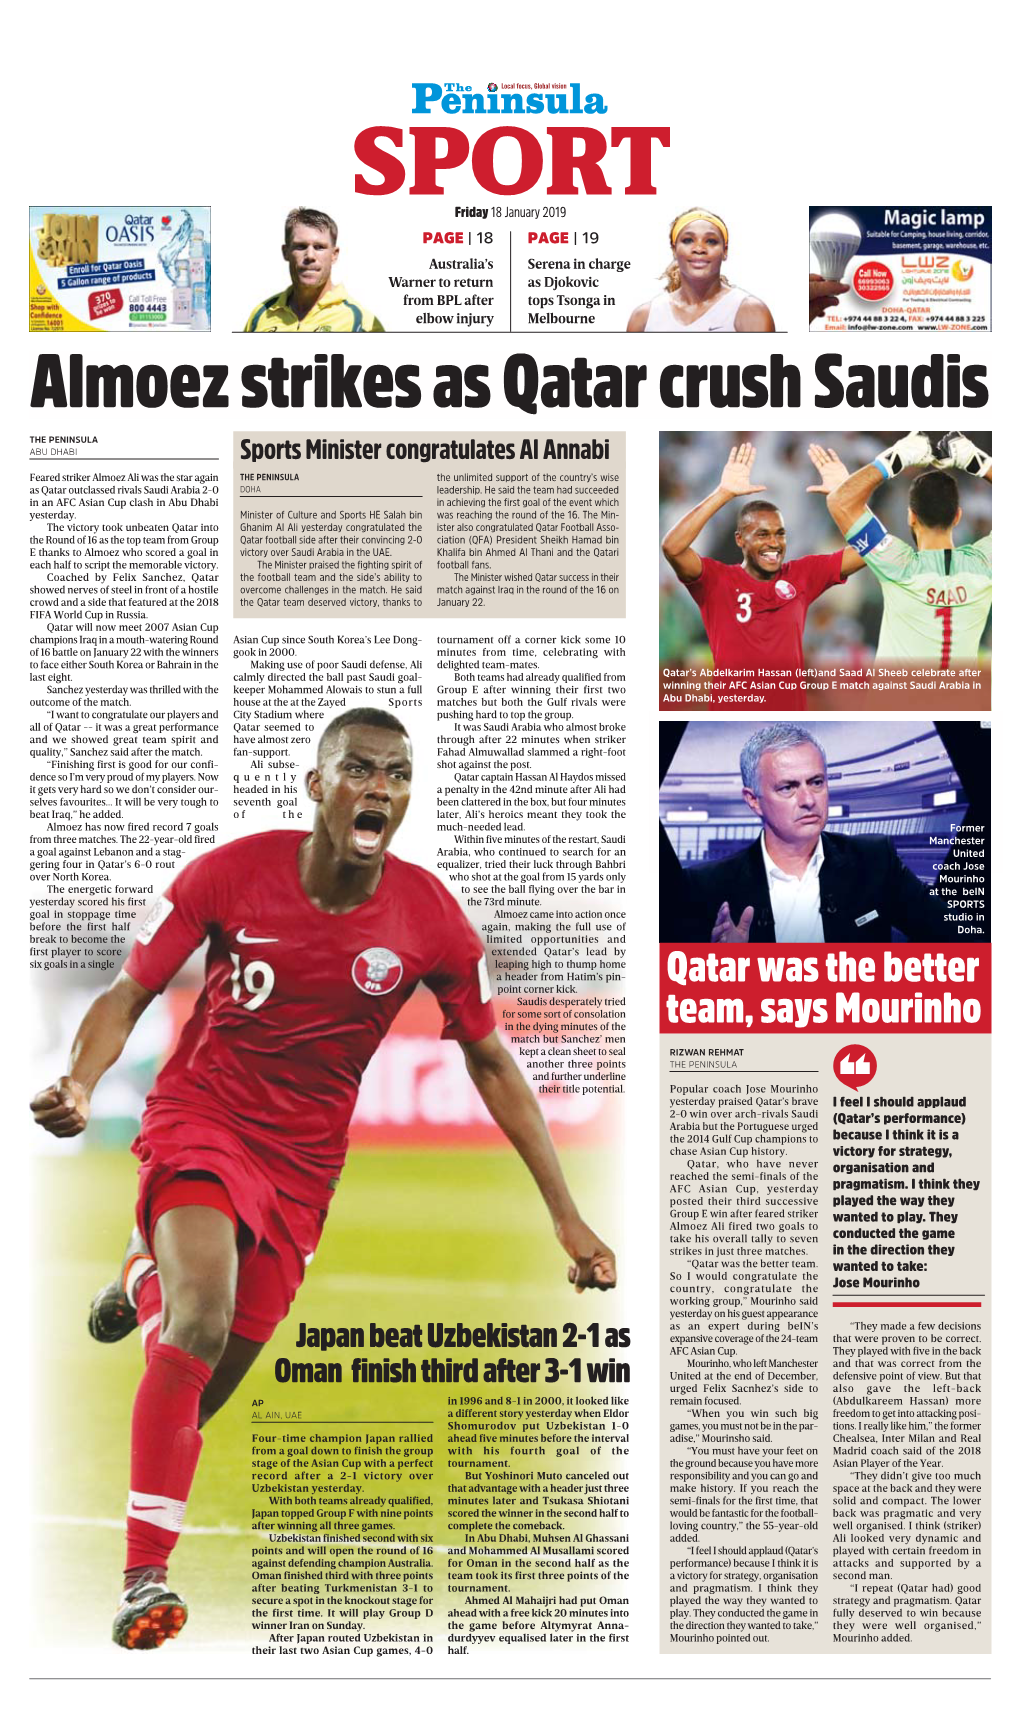 Almoez Strikes As Qatar Crush Saudis